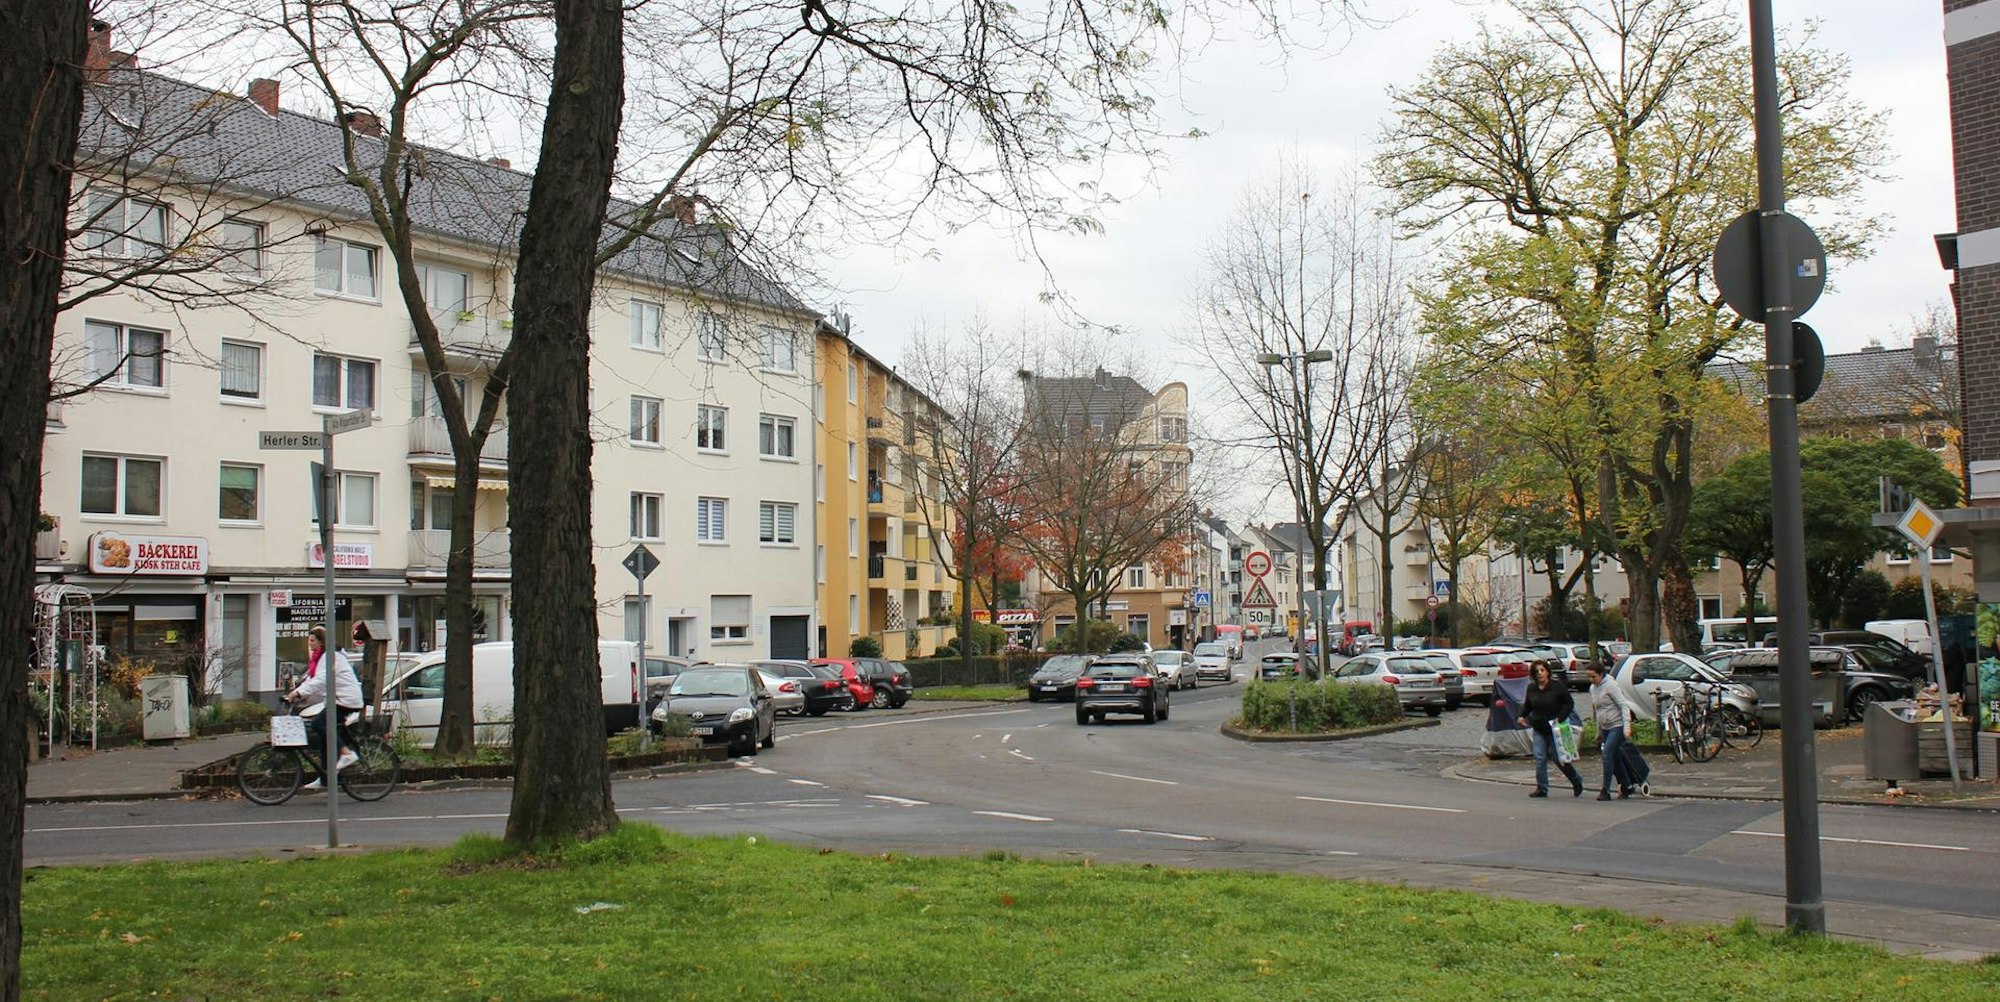 Die Umgestaltung des Platzes an der Herler Straße kommt später als geplant.